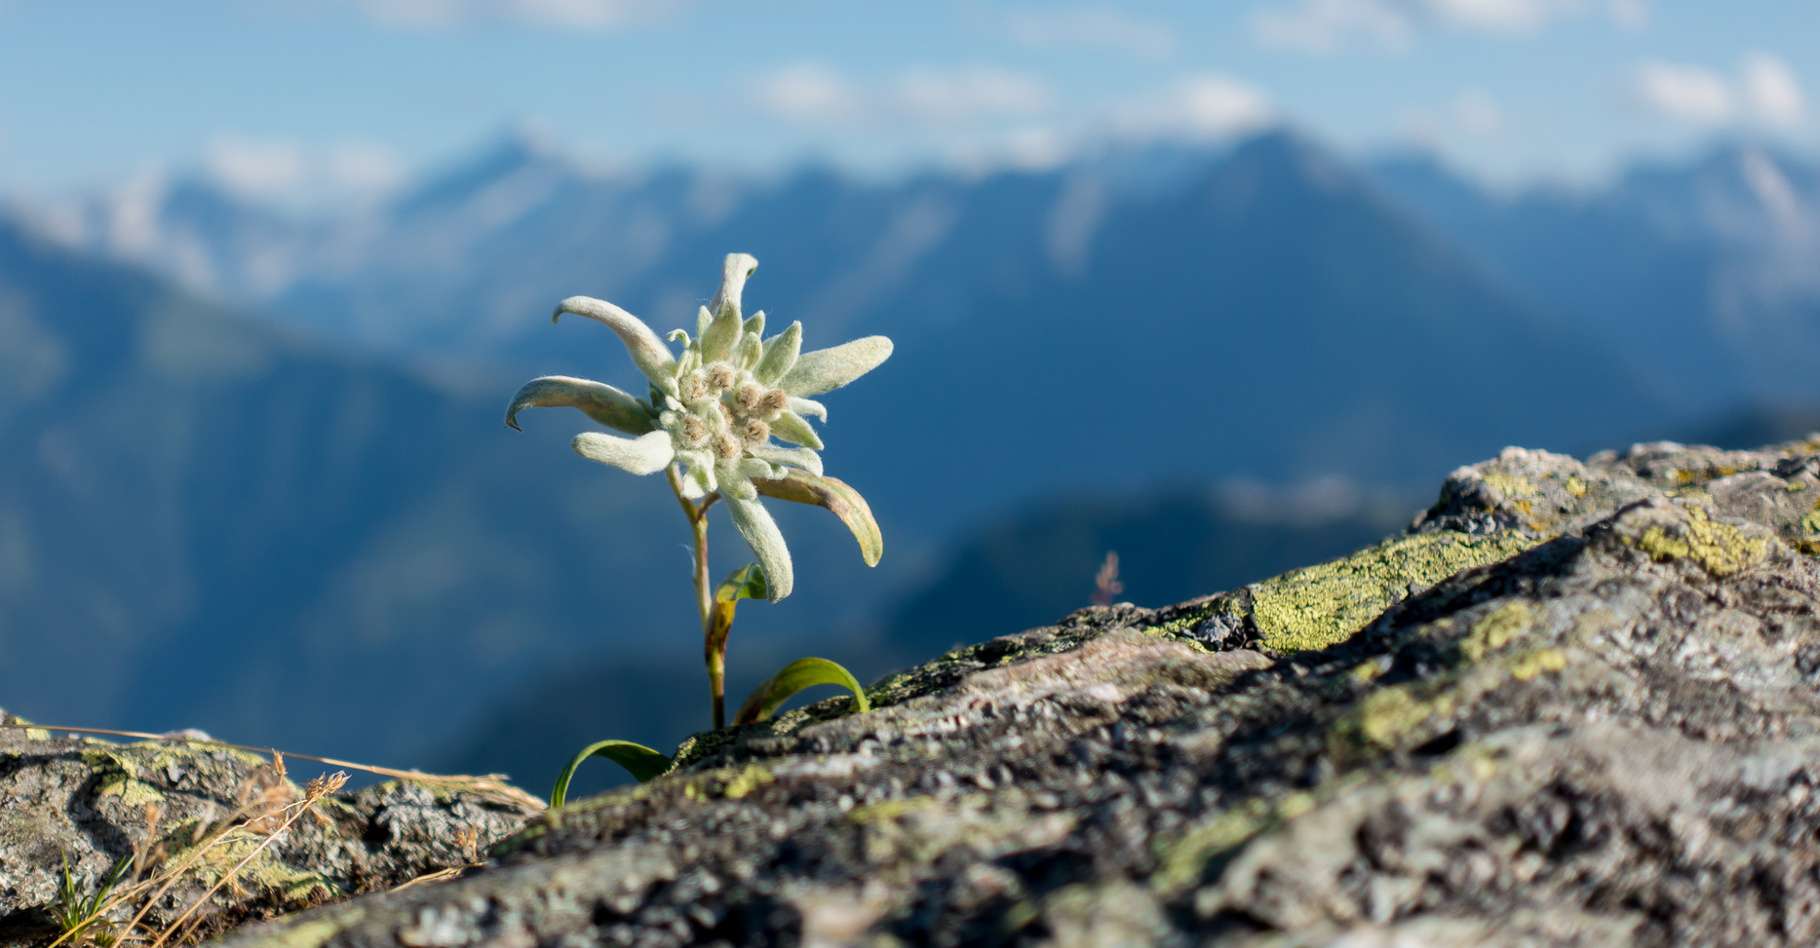 Edelweiss : caractéristiques d'une plante rare et protégée (Leontopodium  alpinum) | Dossier